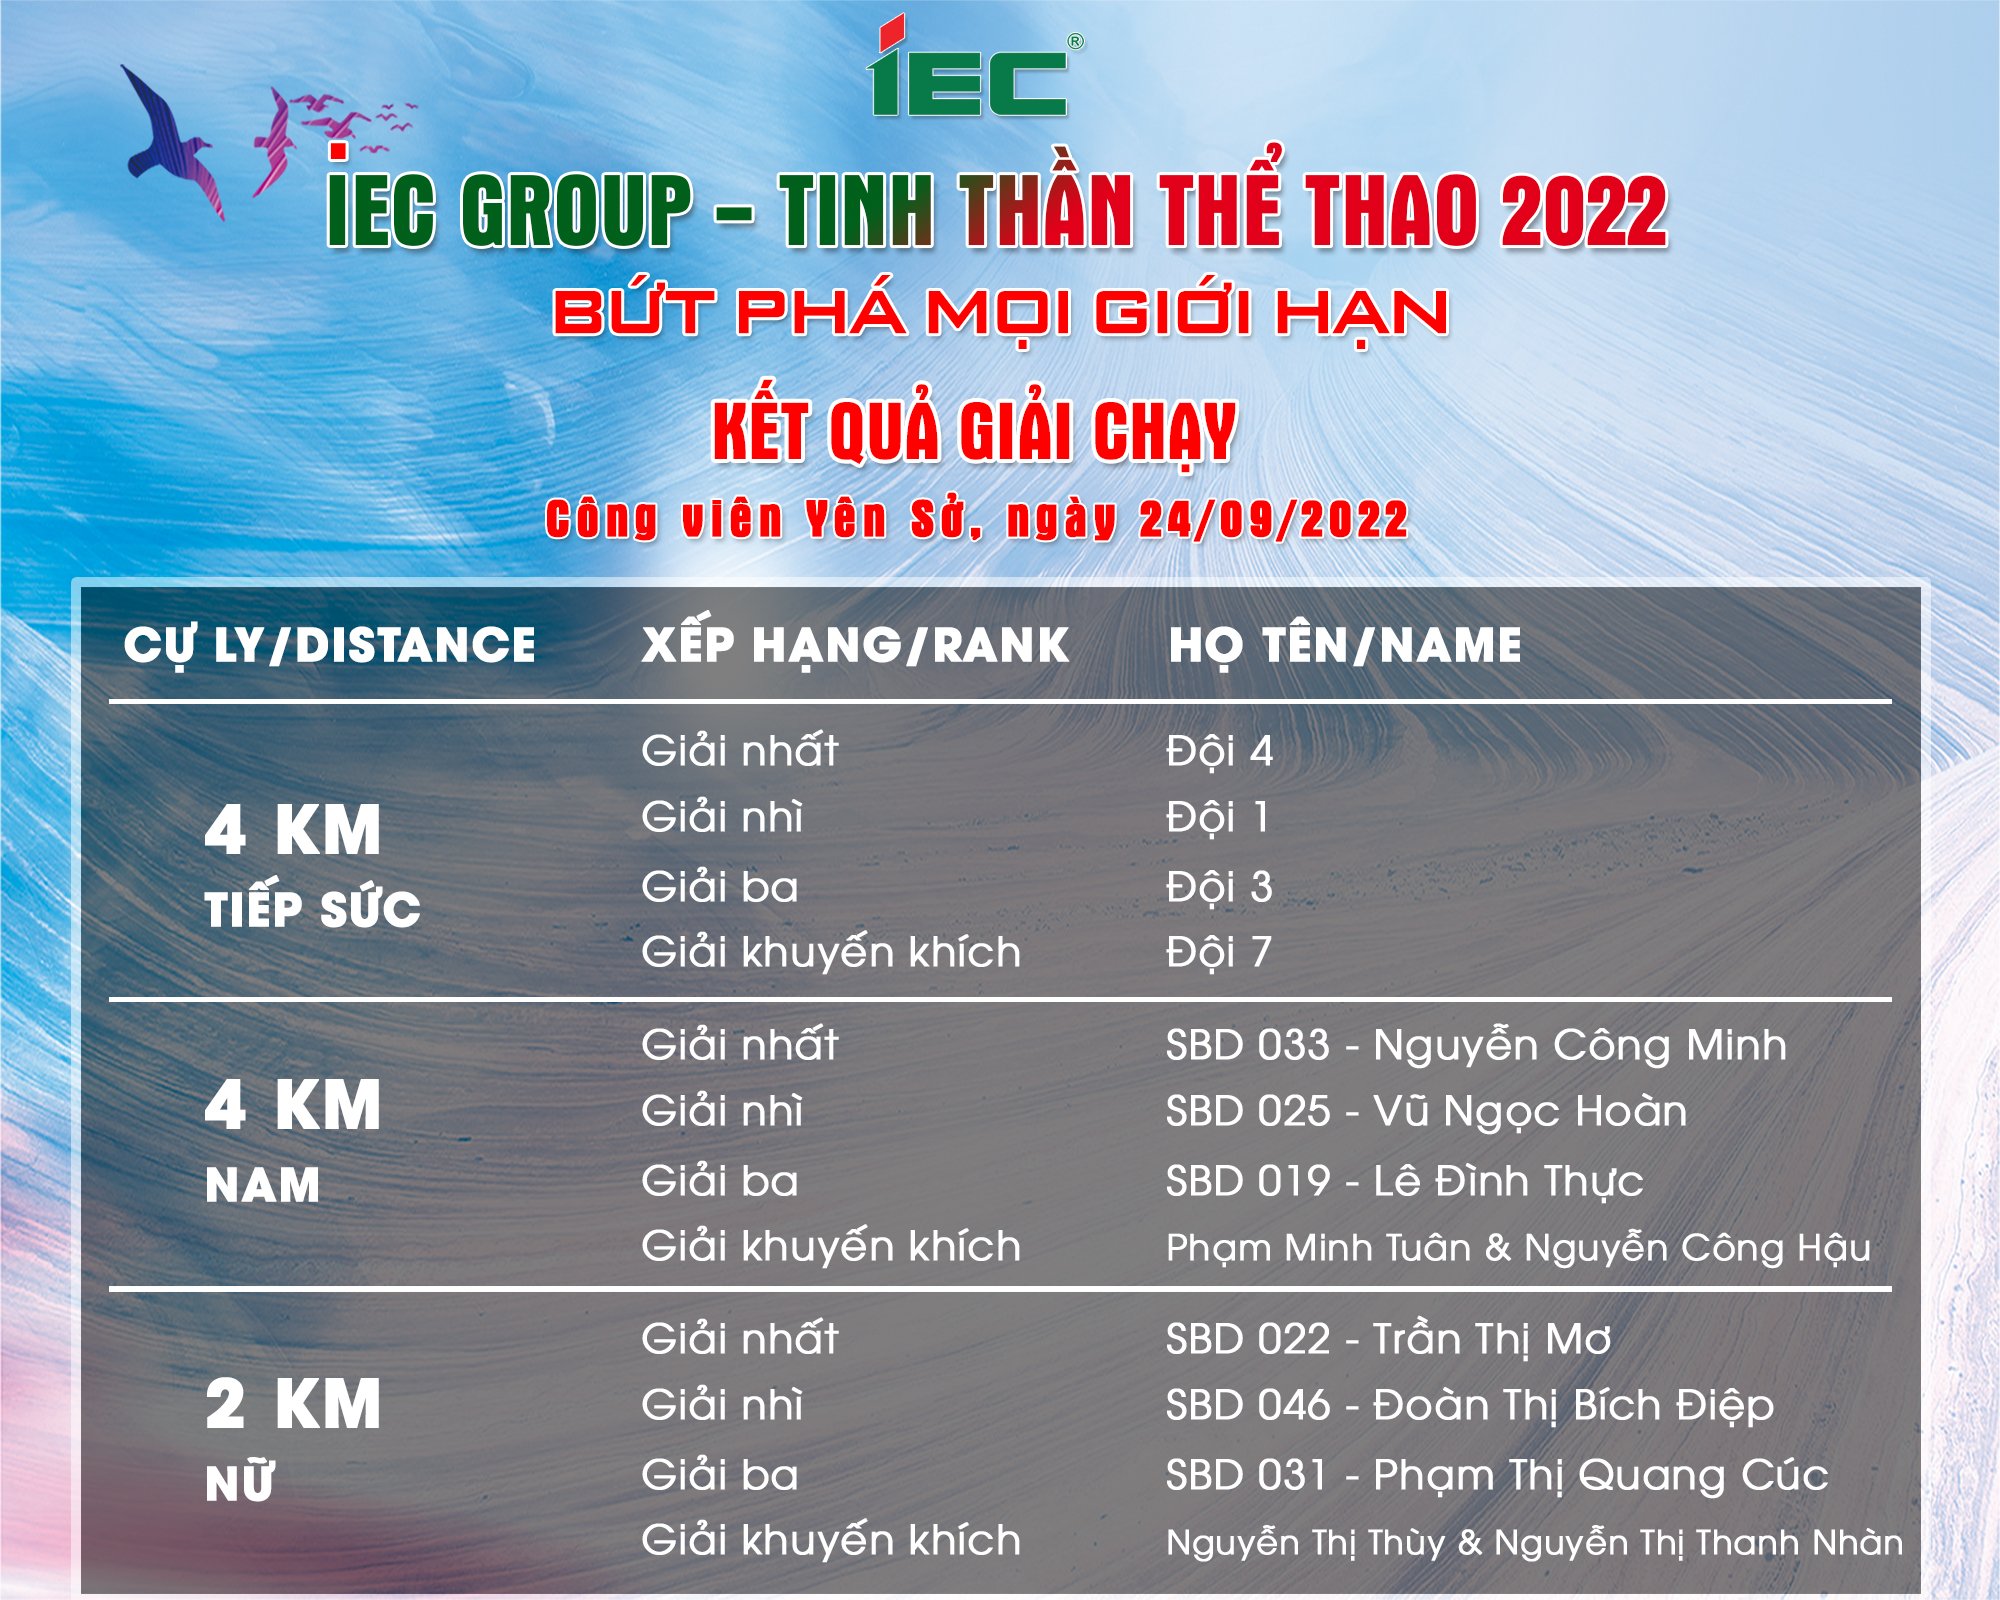 TỔNG KẾT HỘI THAO IEC GROUP - TINH THẦN THỂ THAO 2022